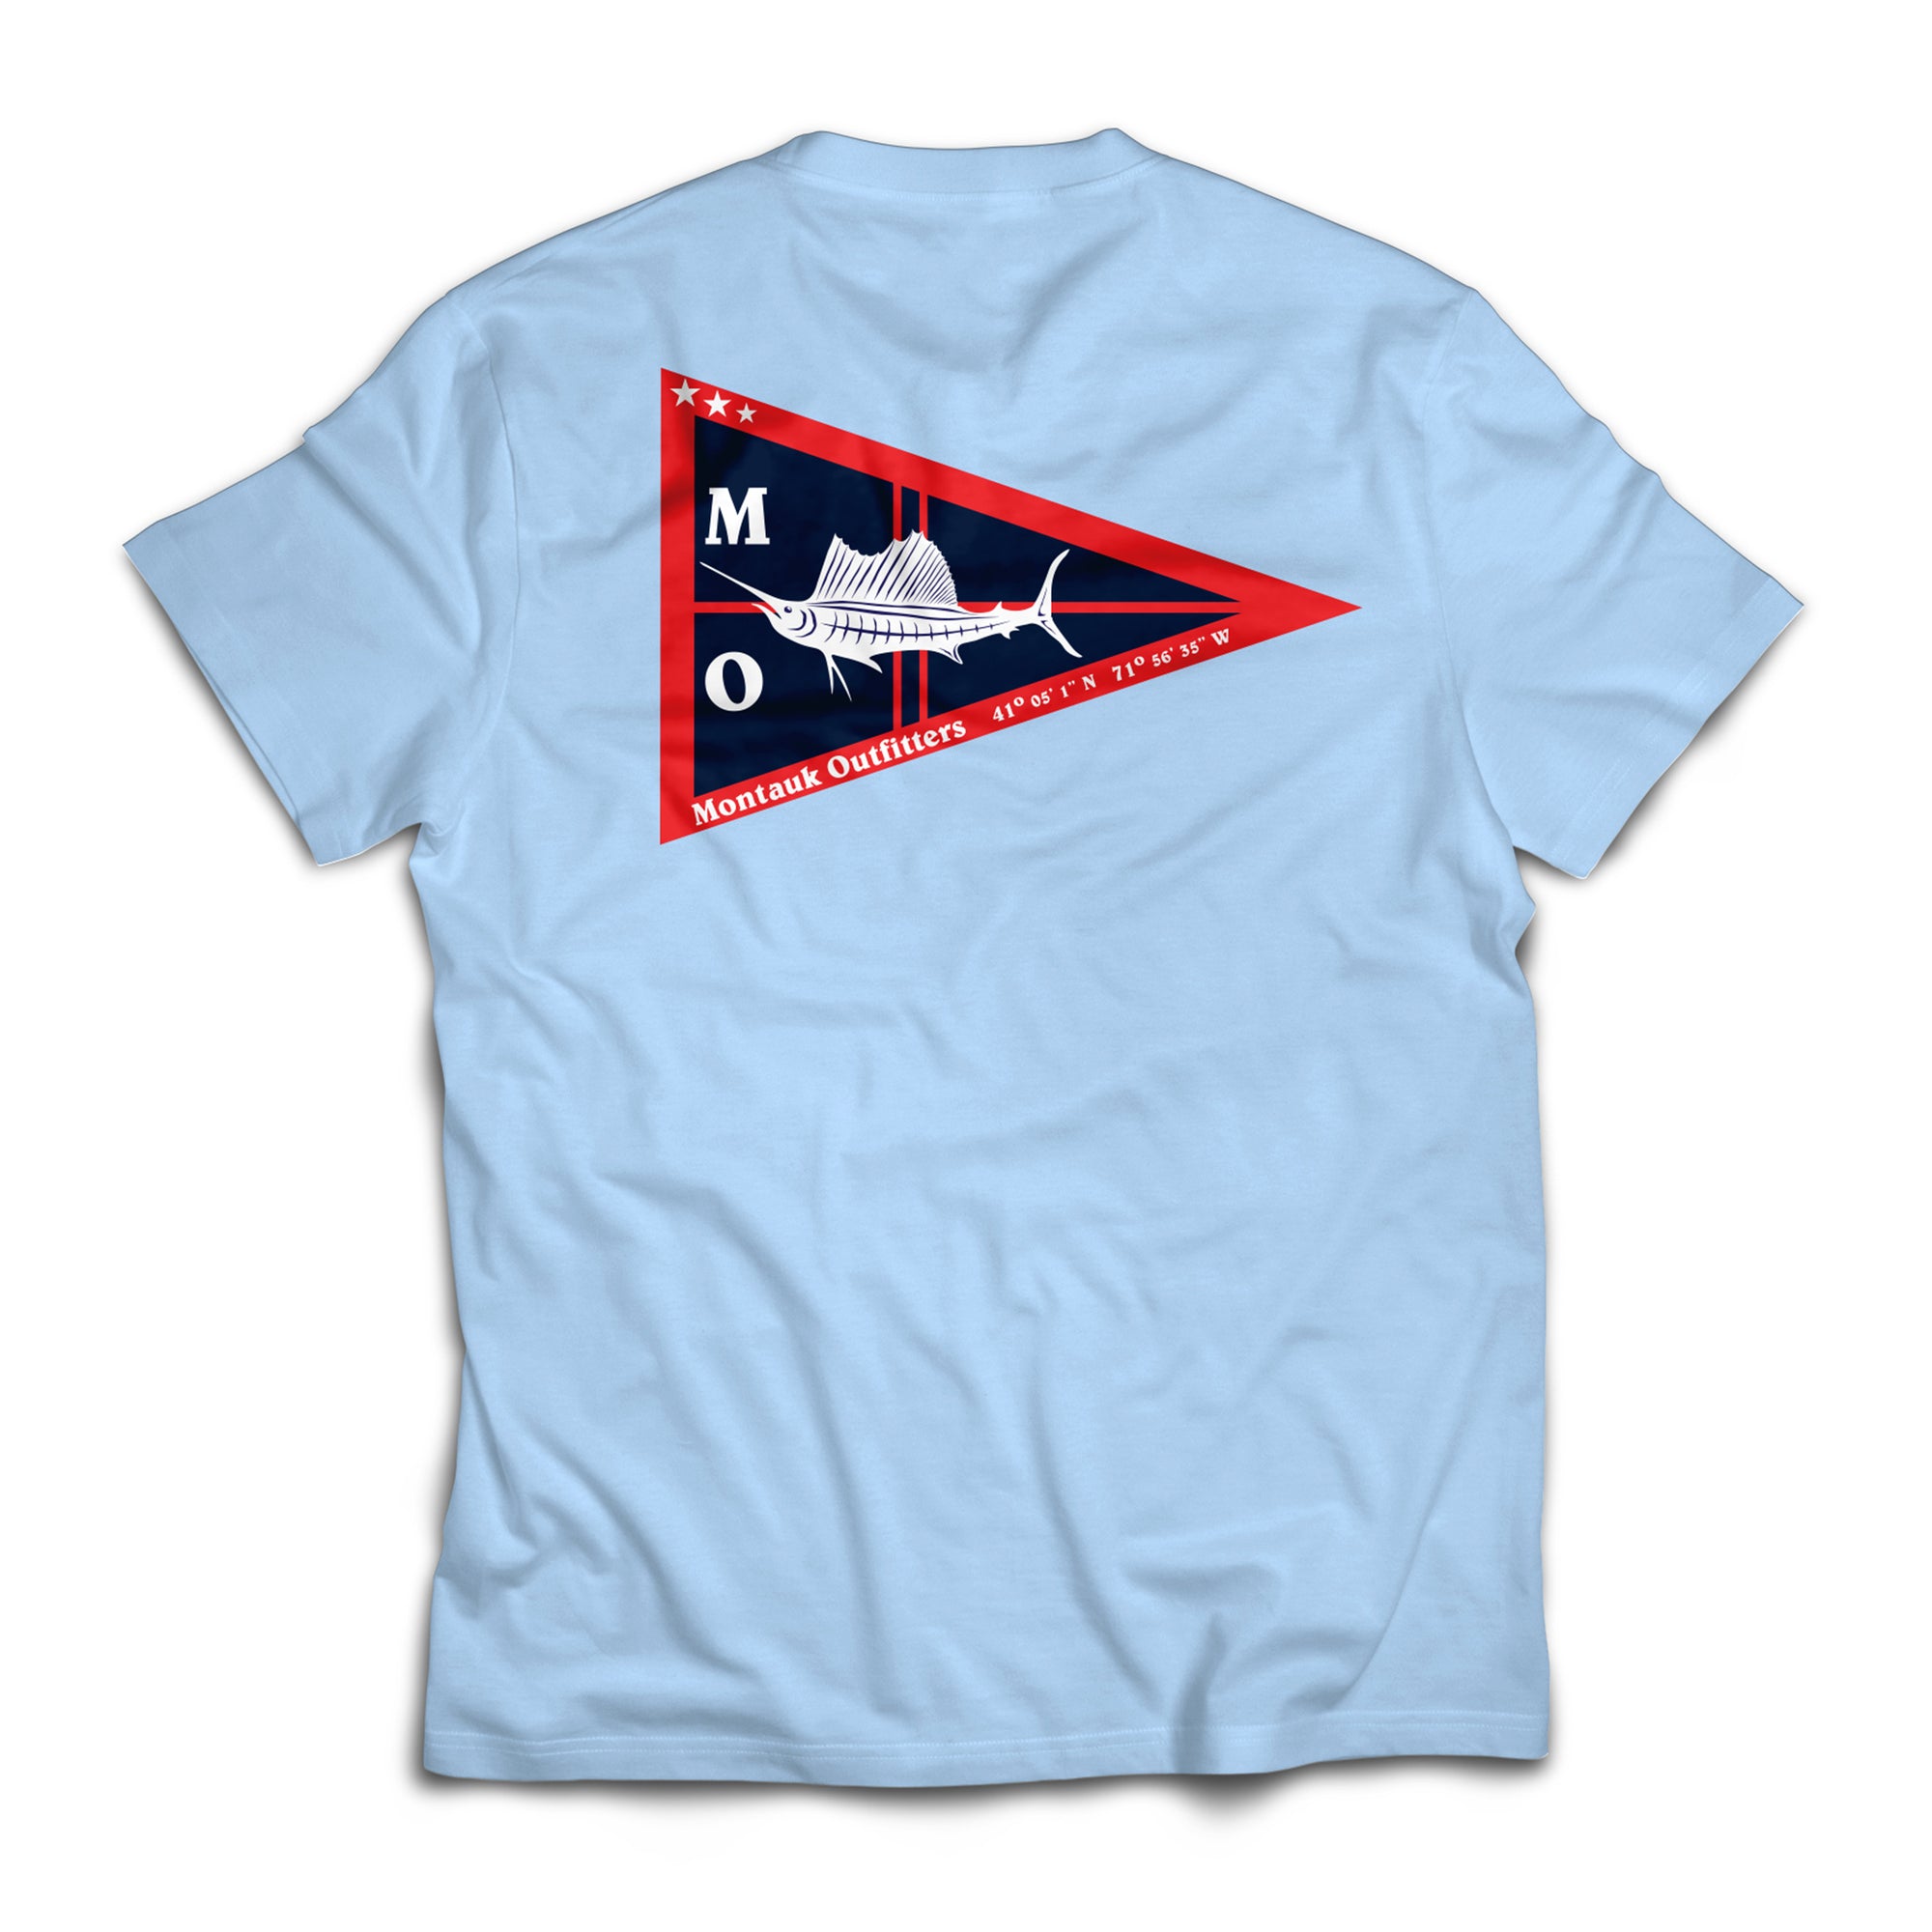 Burgee Flag T-Shirt